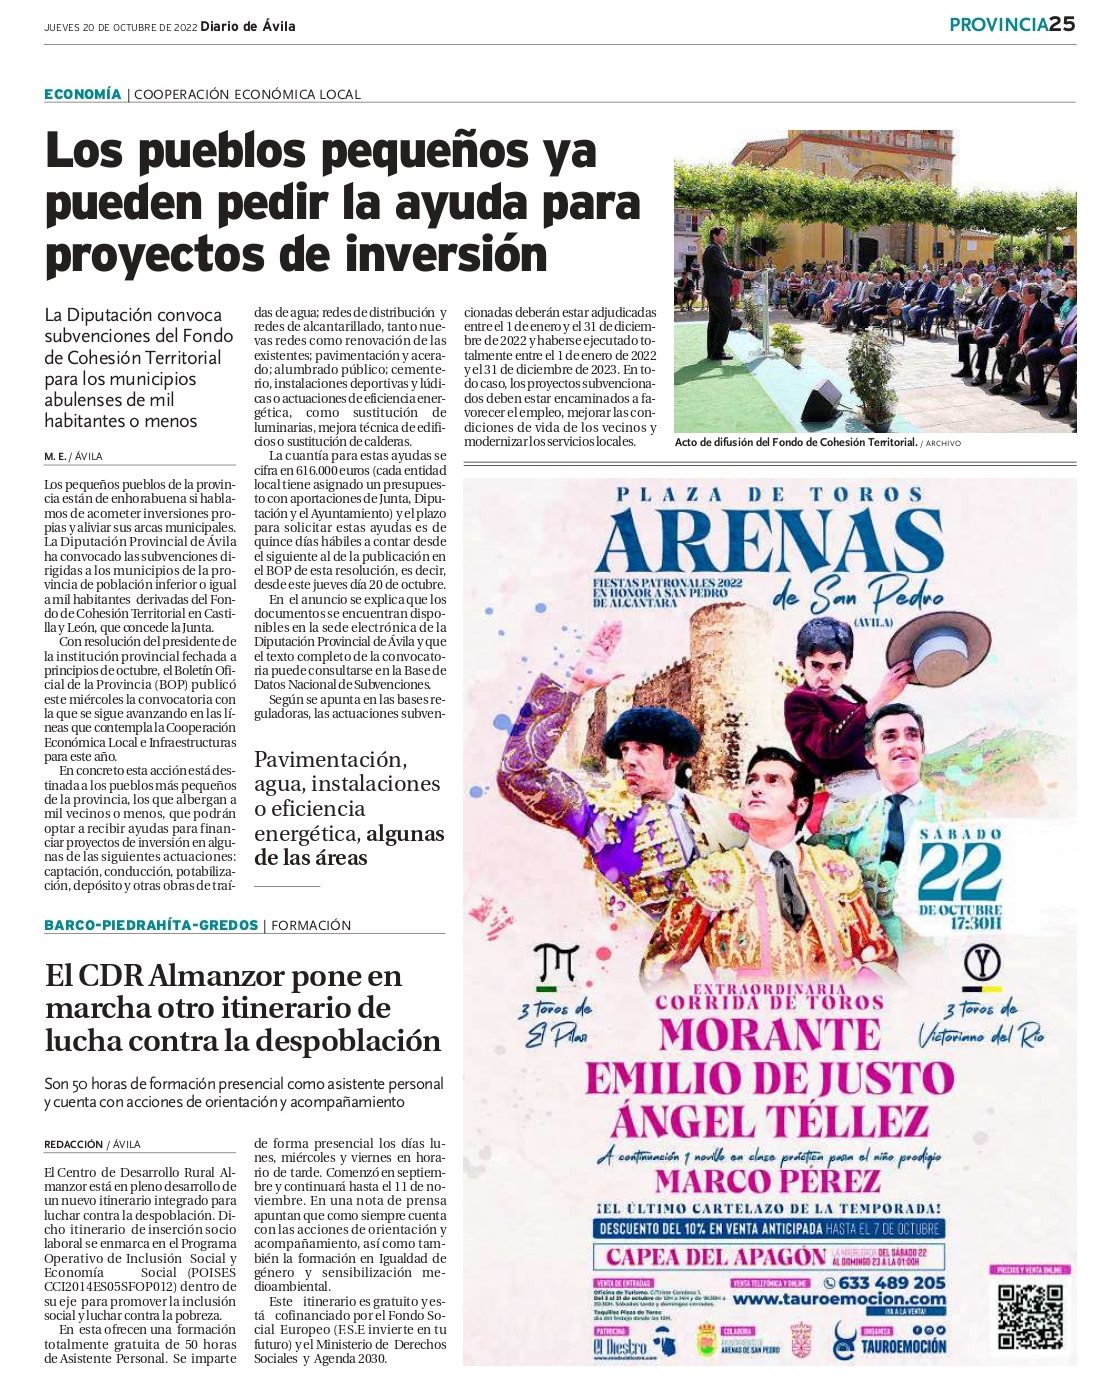 Página del diario de Ávila con información de itinerarios del CDR de Almanzor